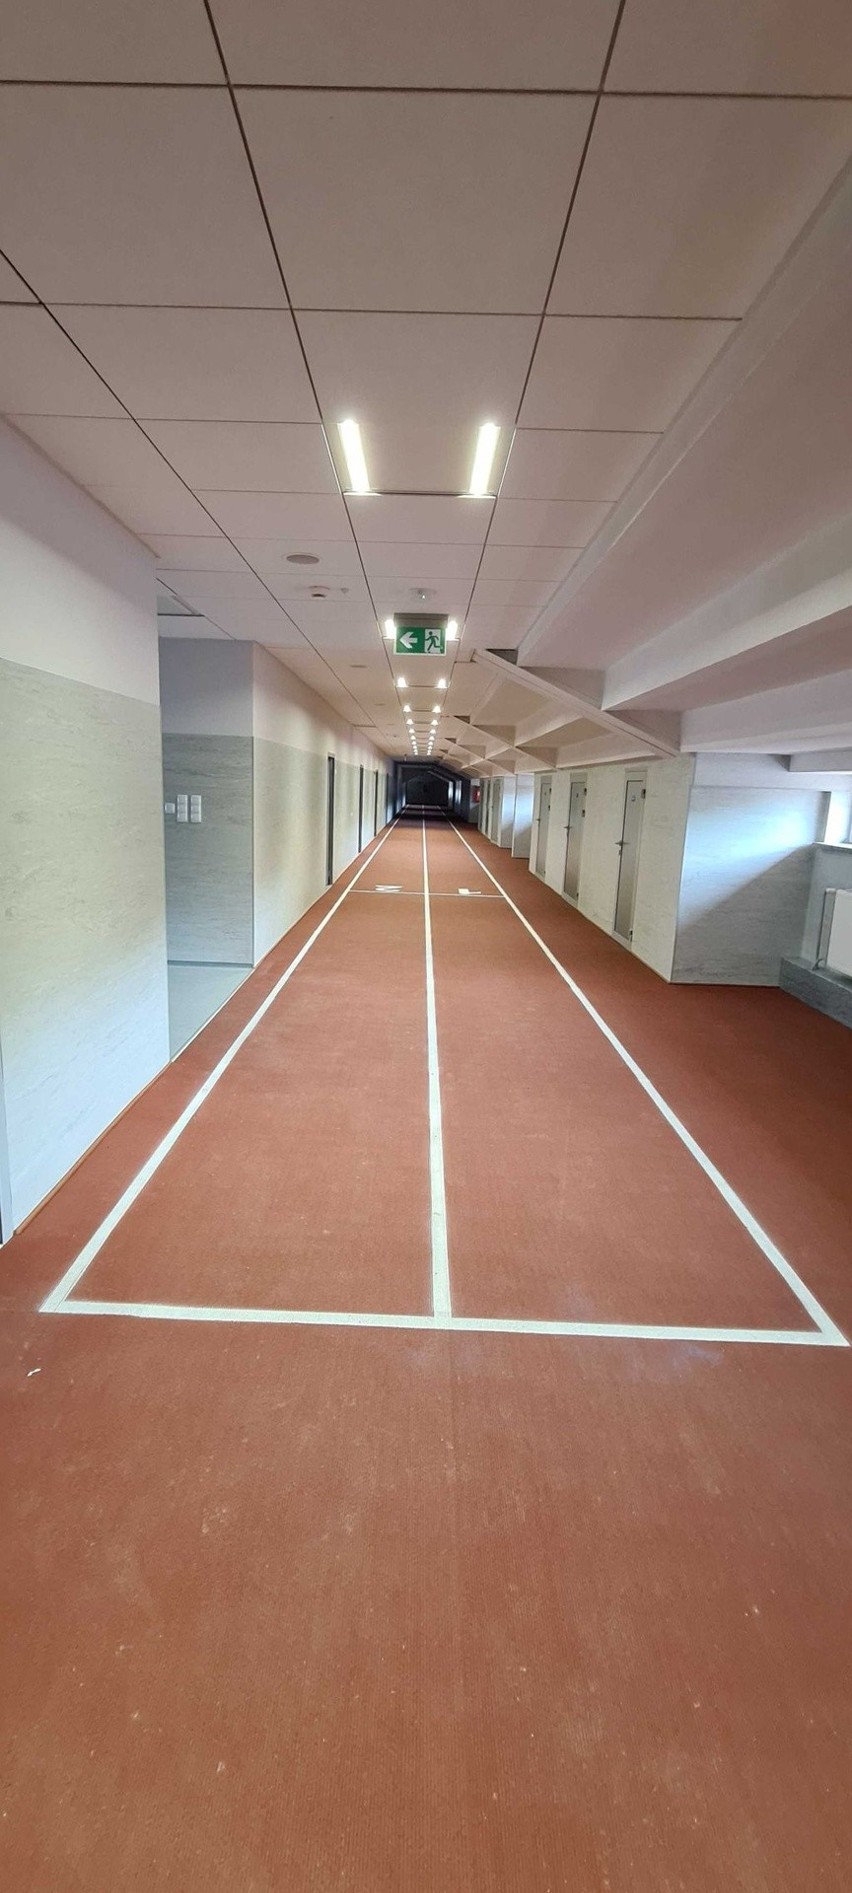 Białystok. Dobiega końca modernizacja pomieszczeń pod trybunami stadionu lekkoatletycznego BOSiR w Zwierzyńcu